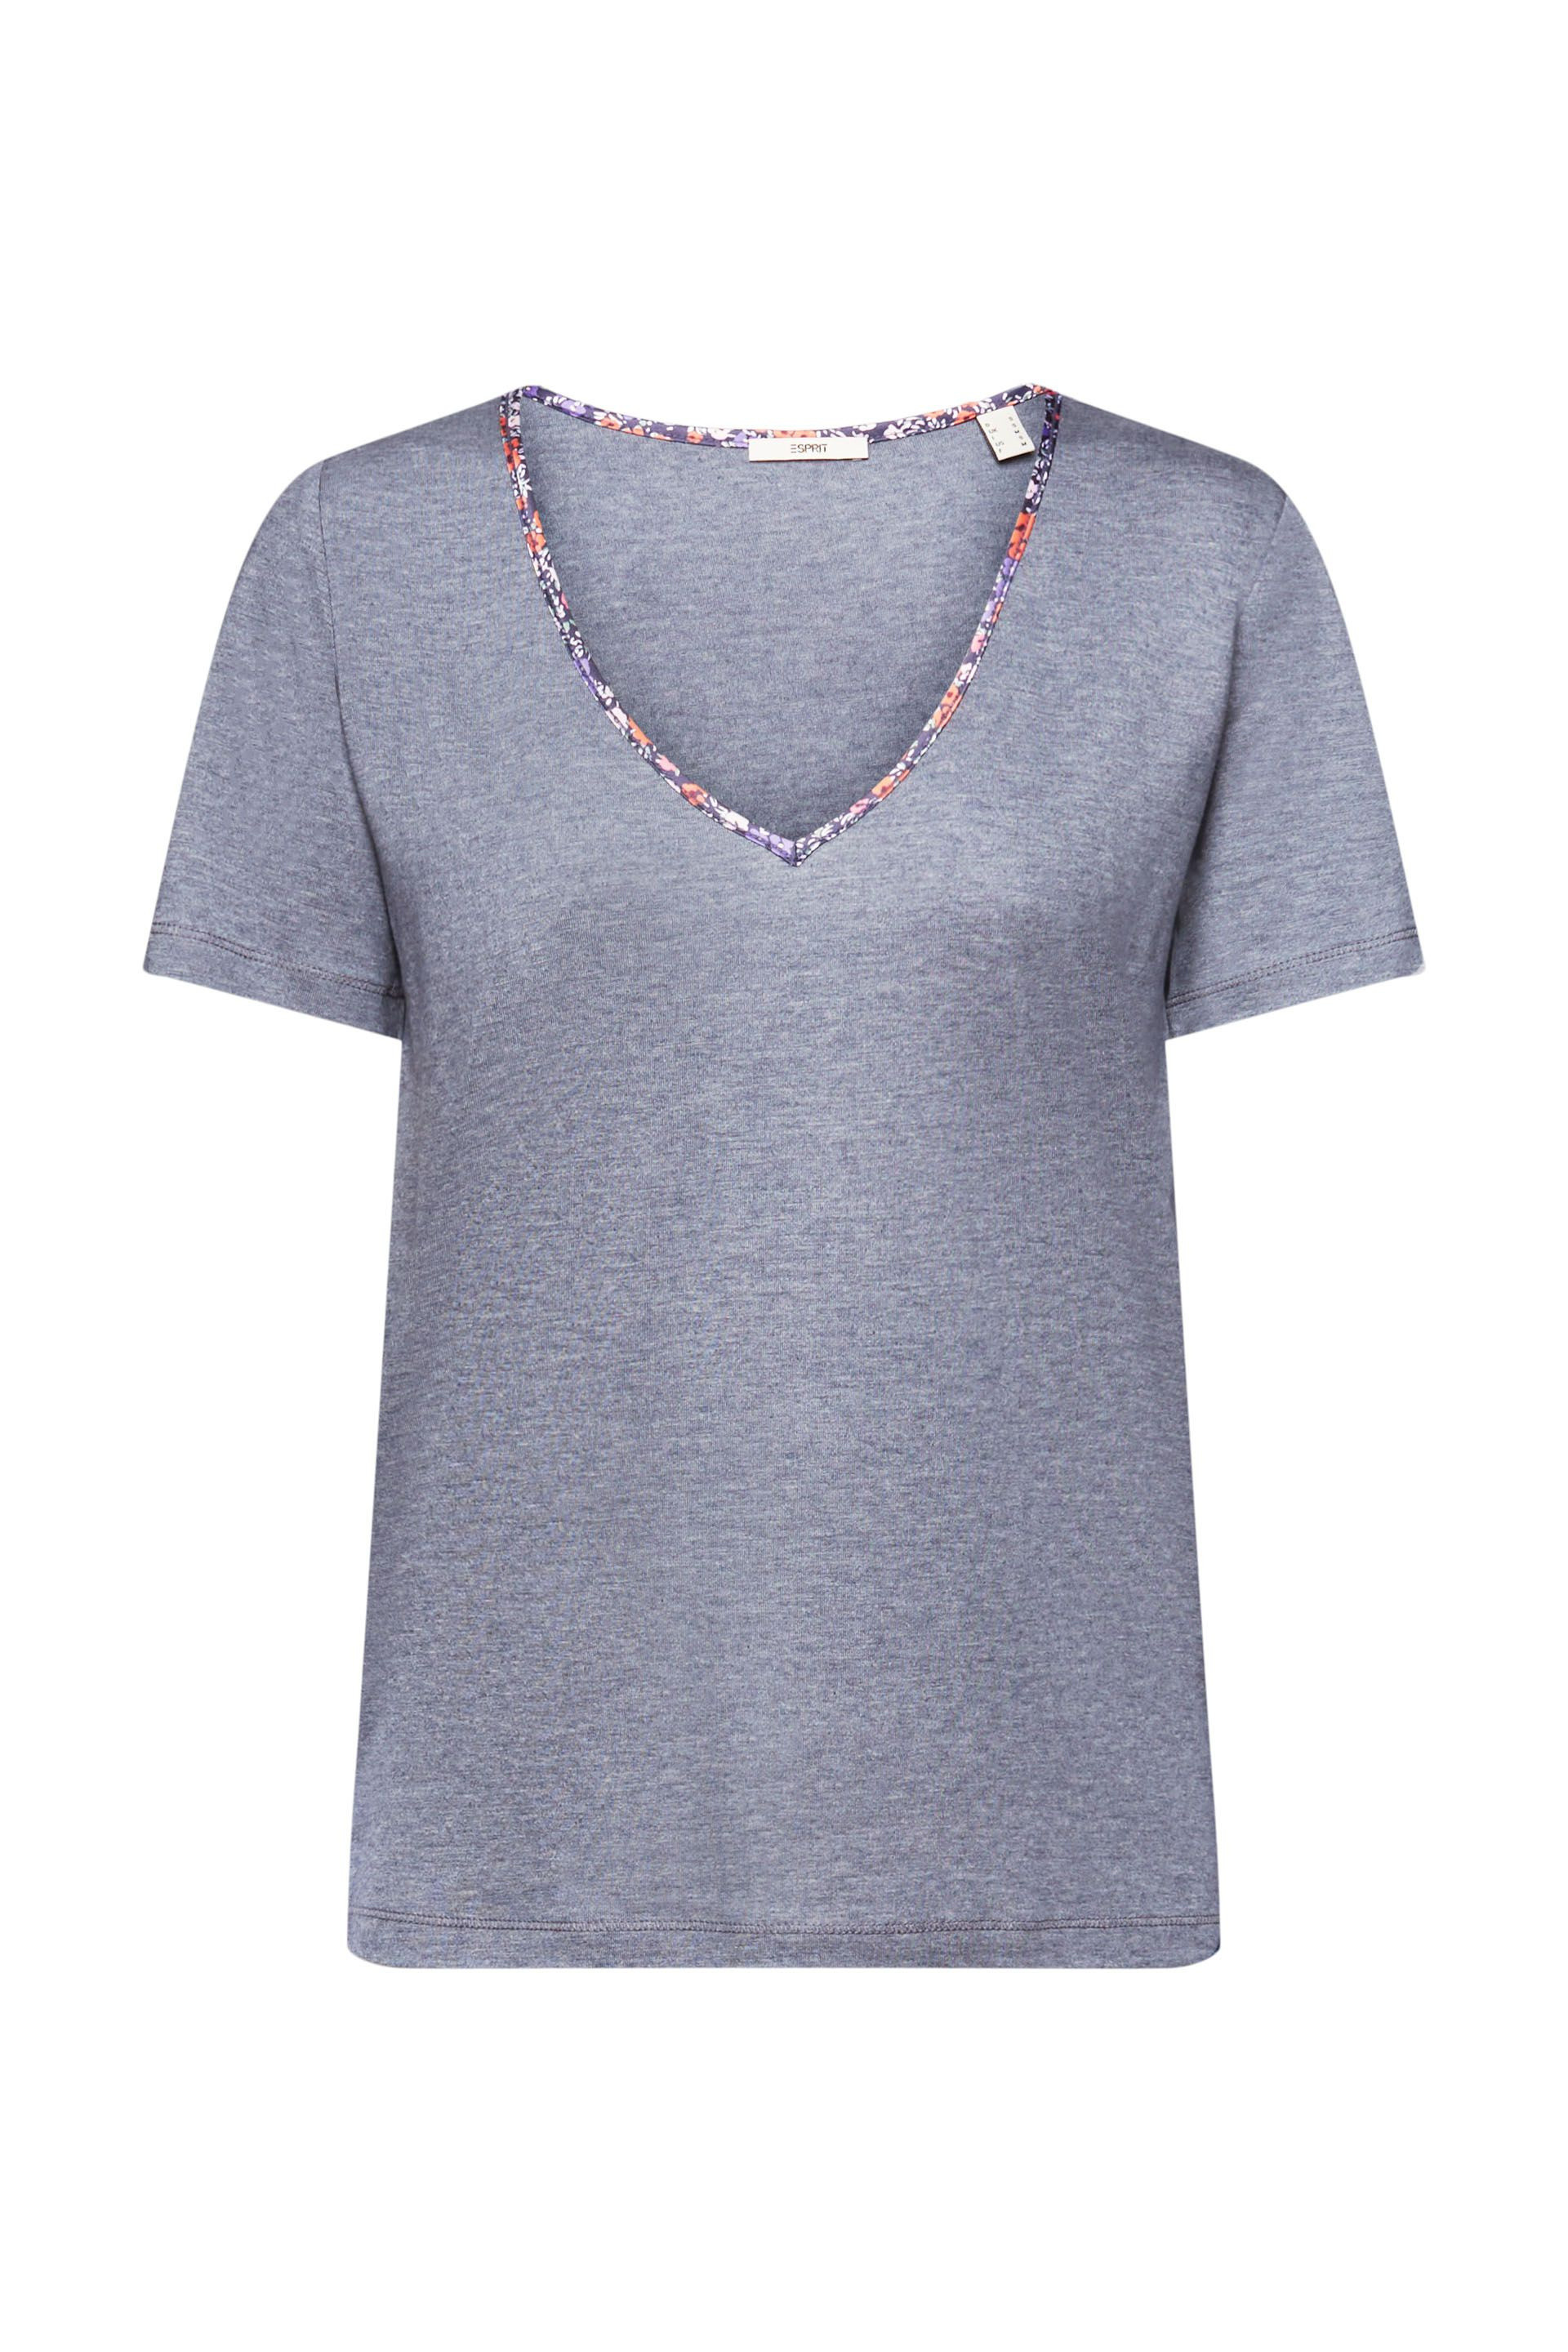 Esprit - Floral V-neck T-shirt, Light Orange, large image number 0